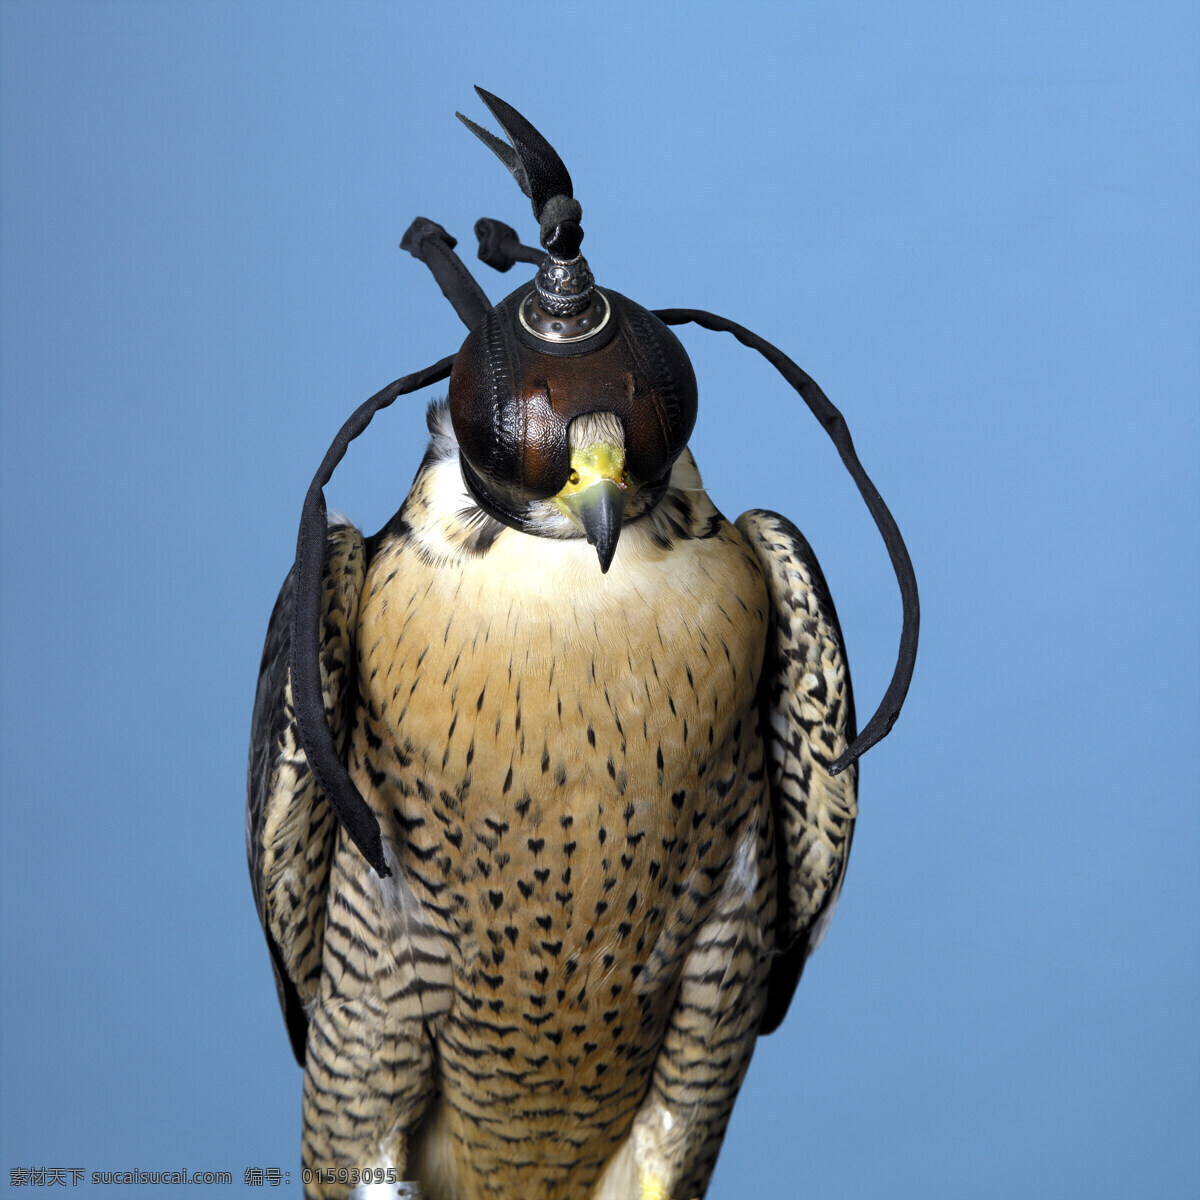 戴 头盔 老鹰 动物世界 飞禽 鸟禽 鸟类 雄鹰 摄影图 空中飞鸟 生物世界